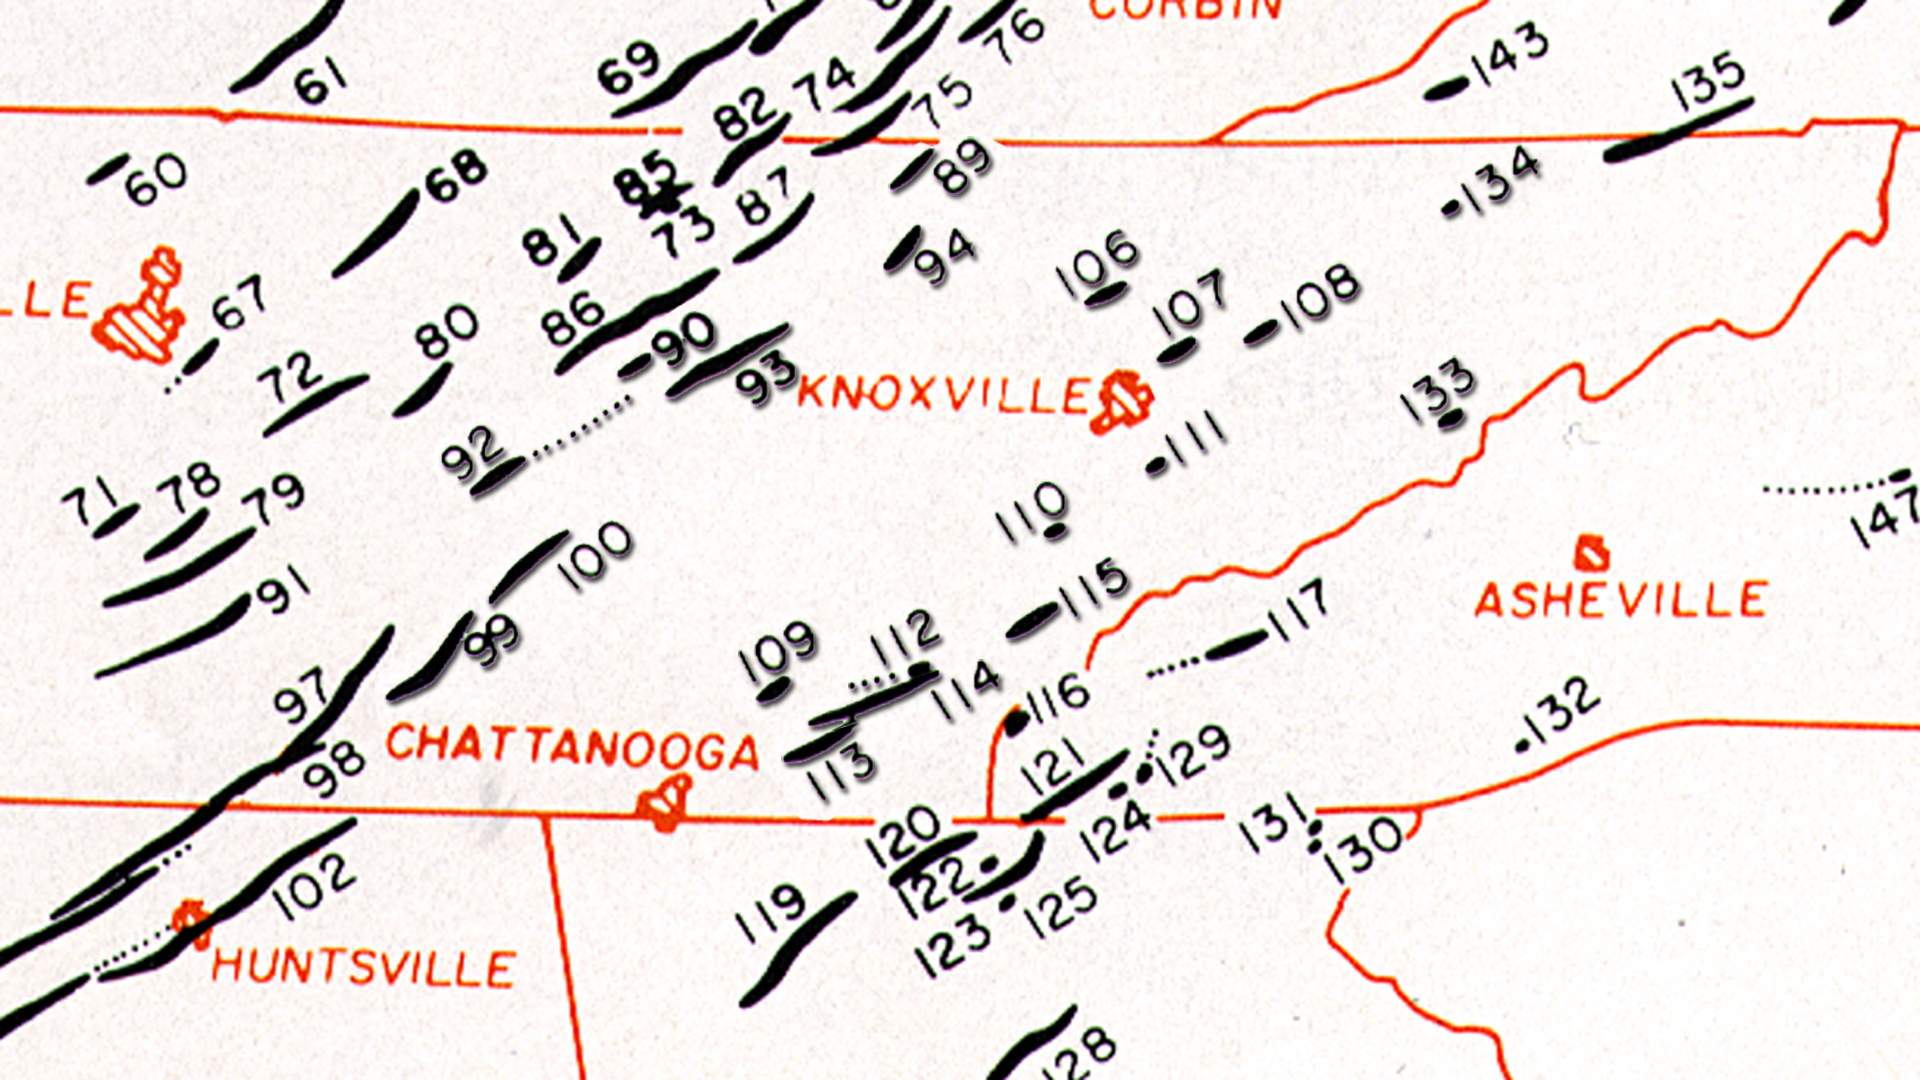 40 years ago 1974 tornado "super outbreak" hits East TN